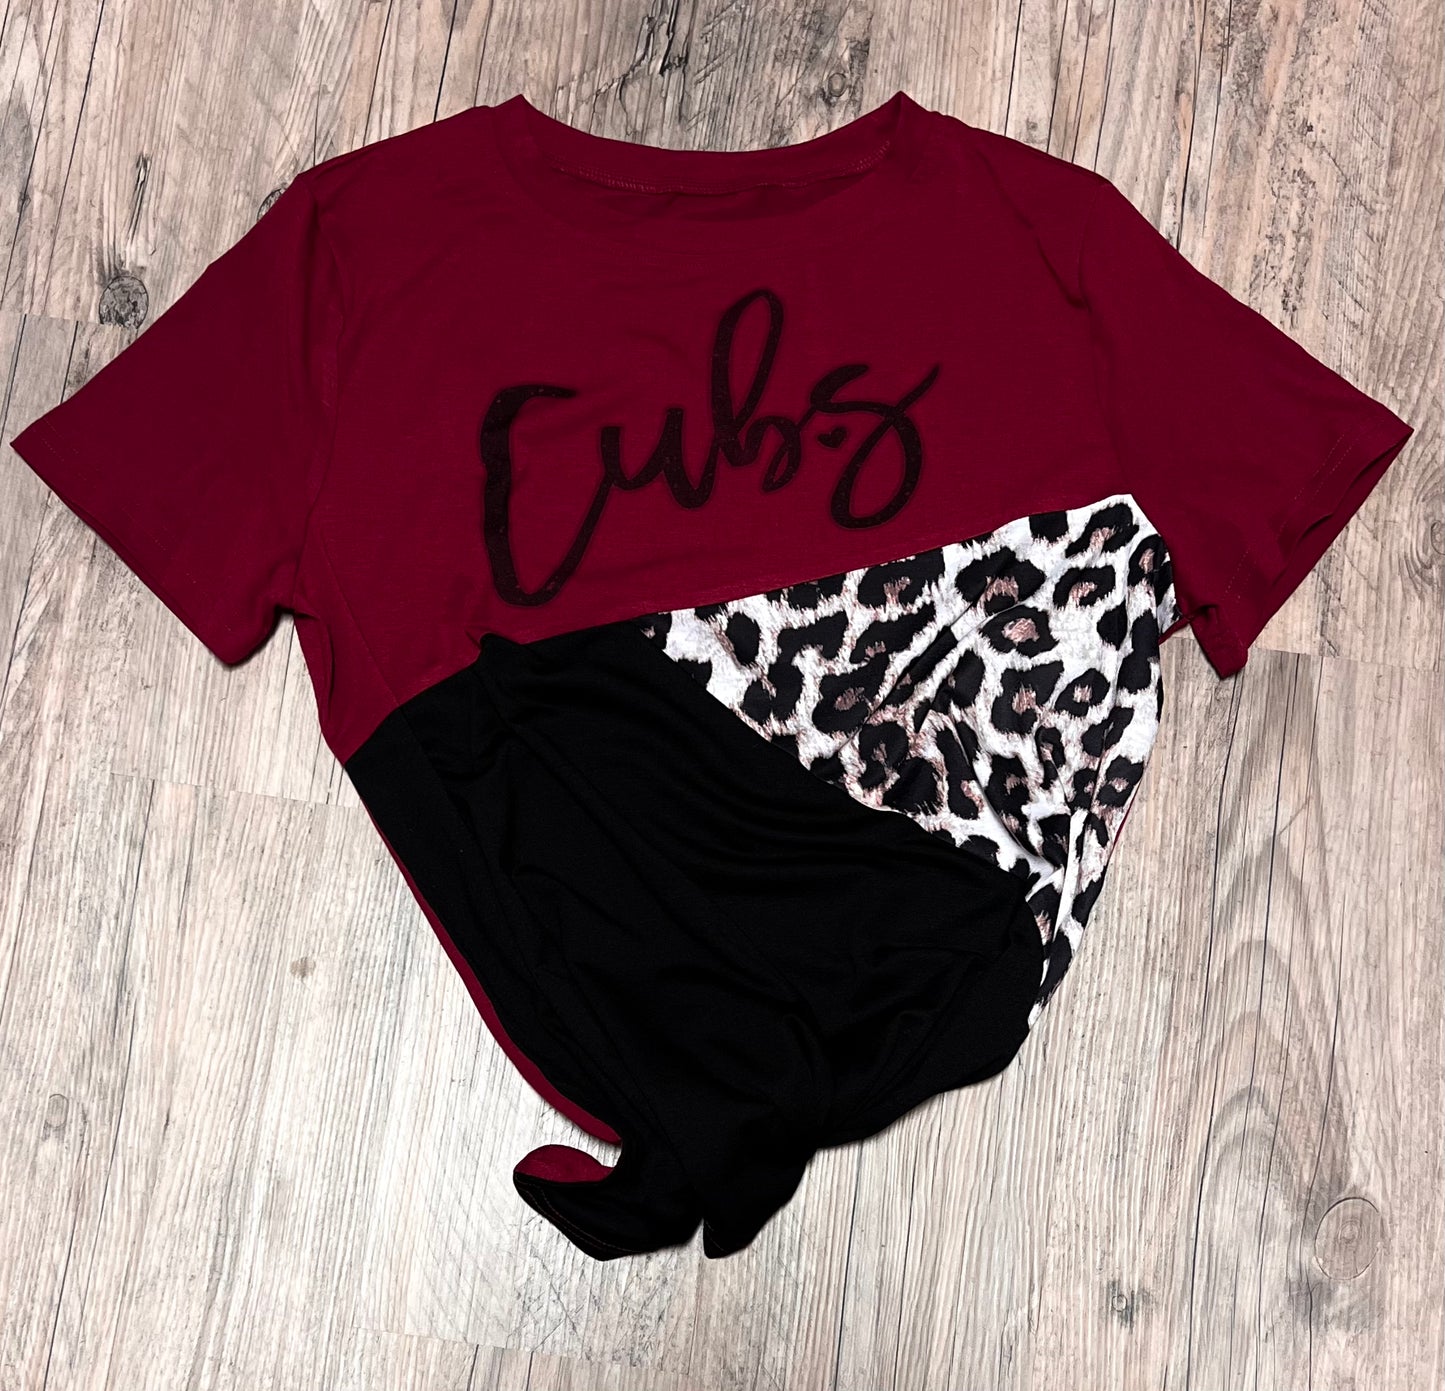 Cubs Short Sleeve T-Shirt |BESTEES-SD| (Copy)